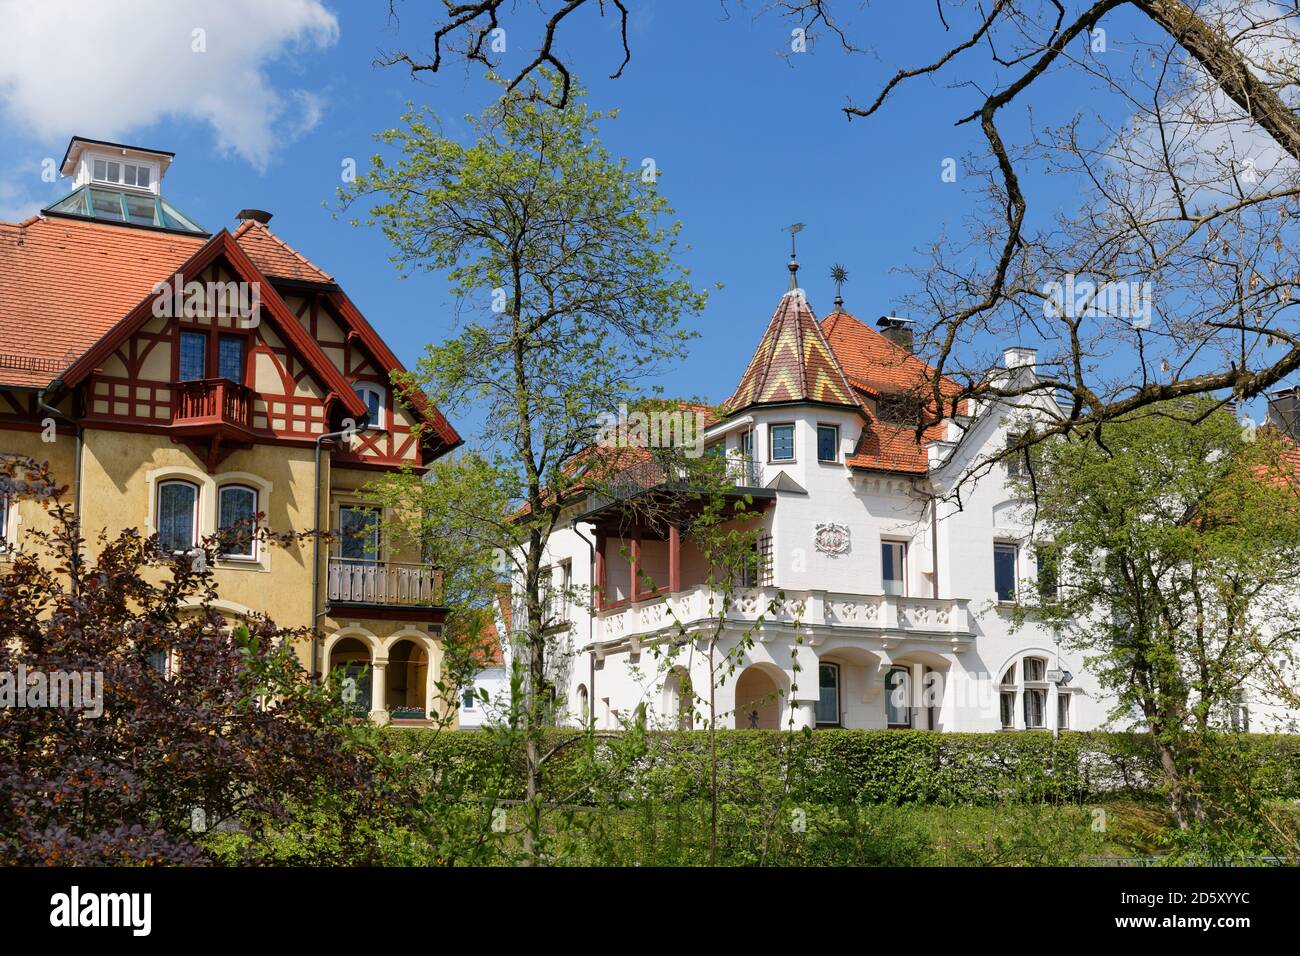 Germany, Bavaria, Bad Aibling, villas Stock Photo